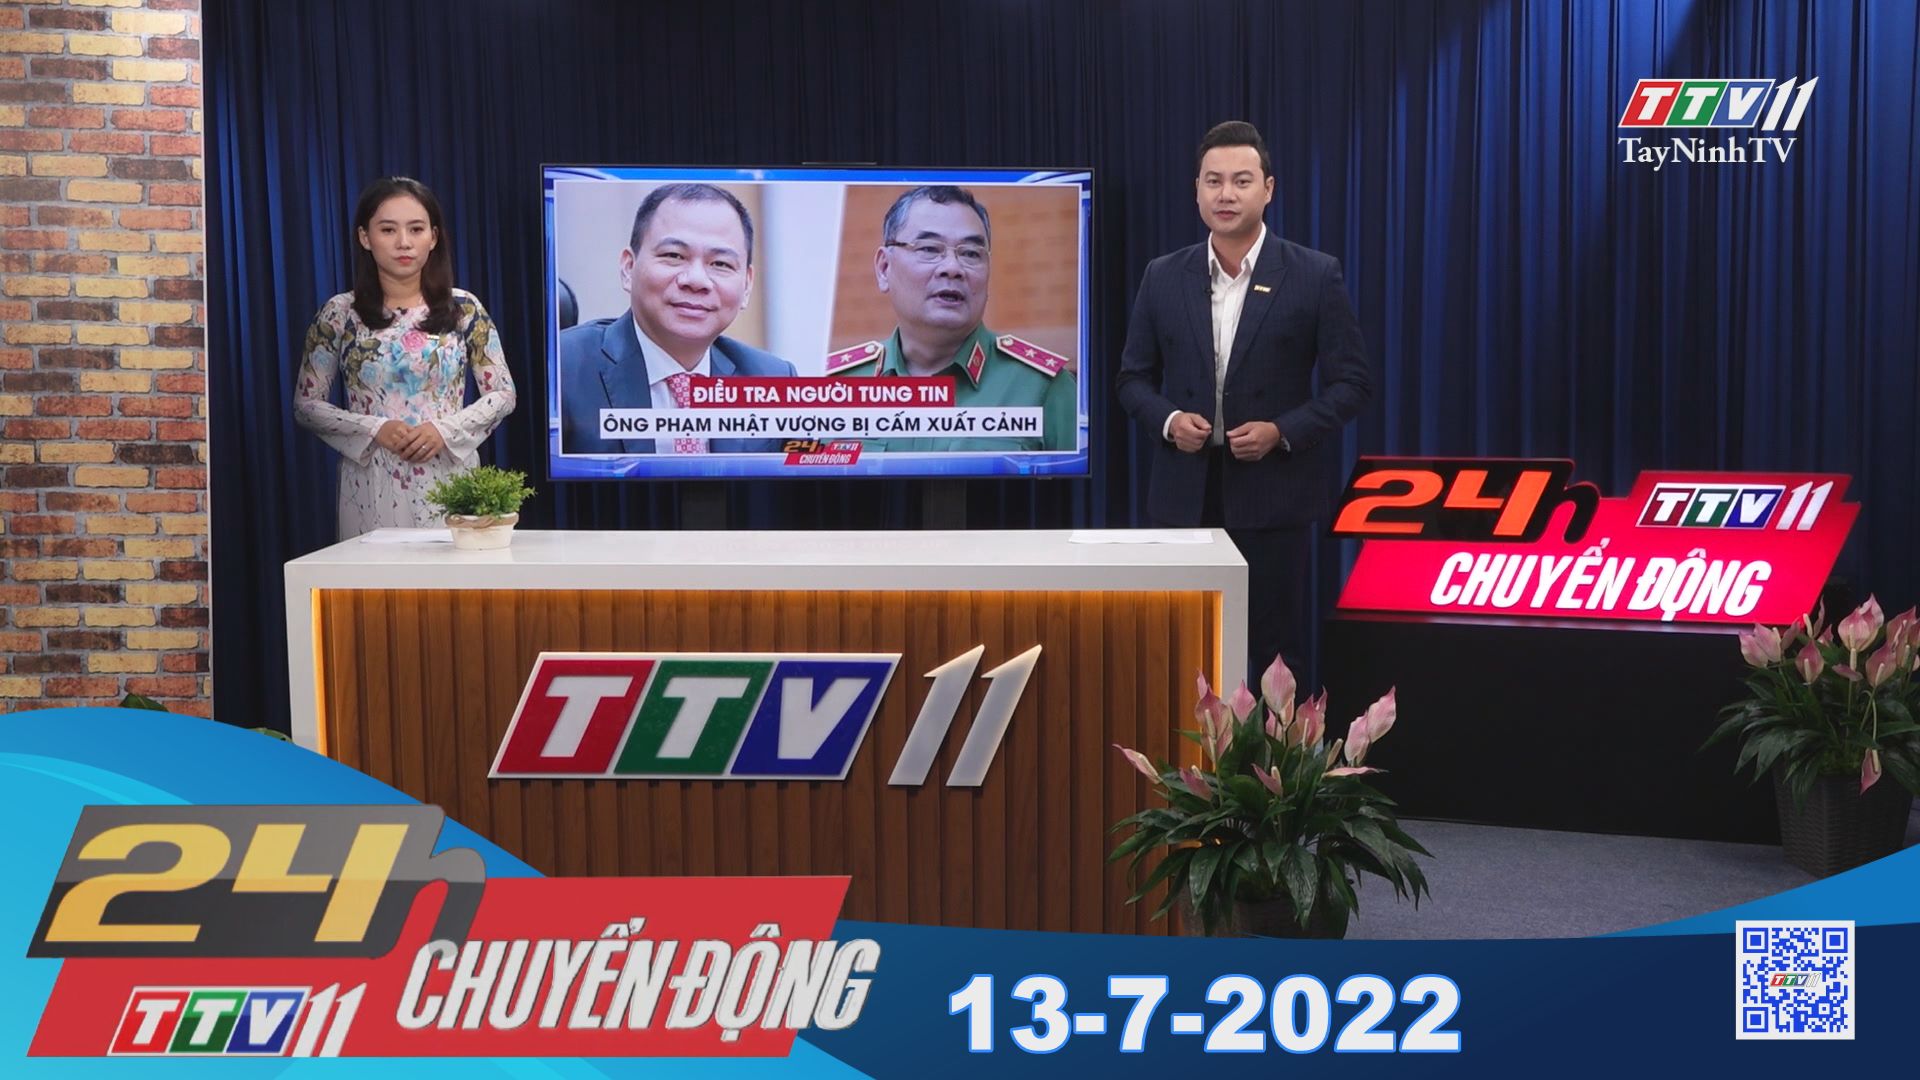 24h Chuyển động 13-7-2022 | Tin tức hôm nay | TayNinhTV